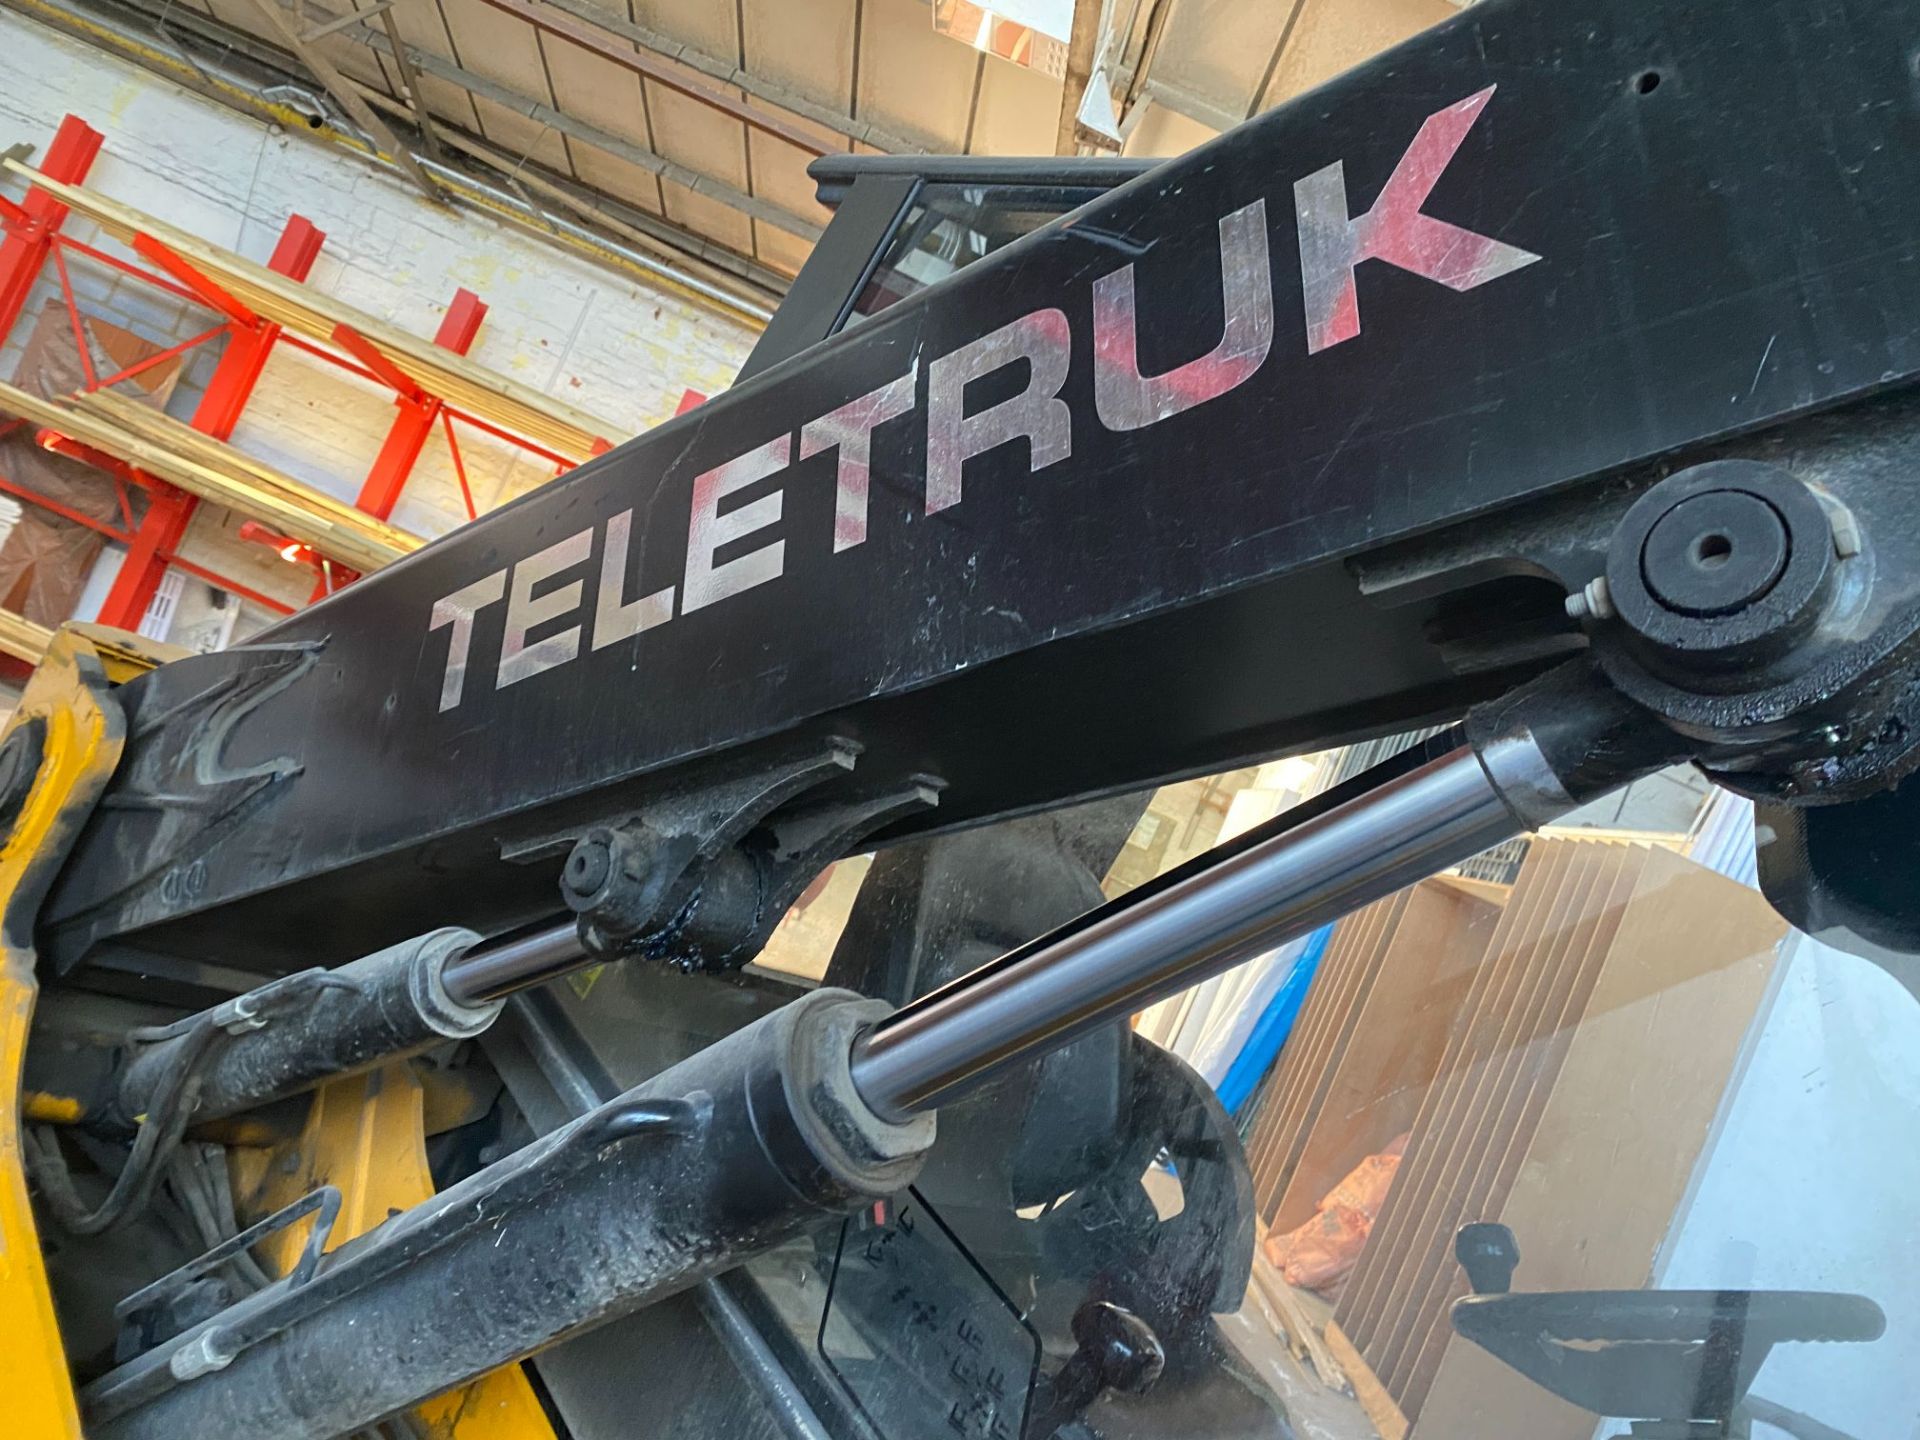 JCB Teletruk 30G 3000kg telescopic LPG forklift truck, serial no: JCBTLT30E915393372 - 2,758 - Image 5 of 16